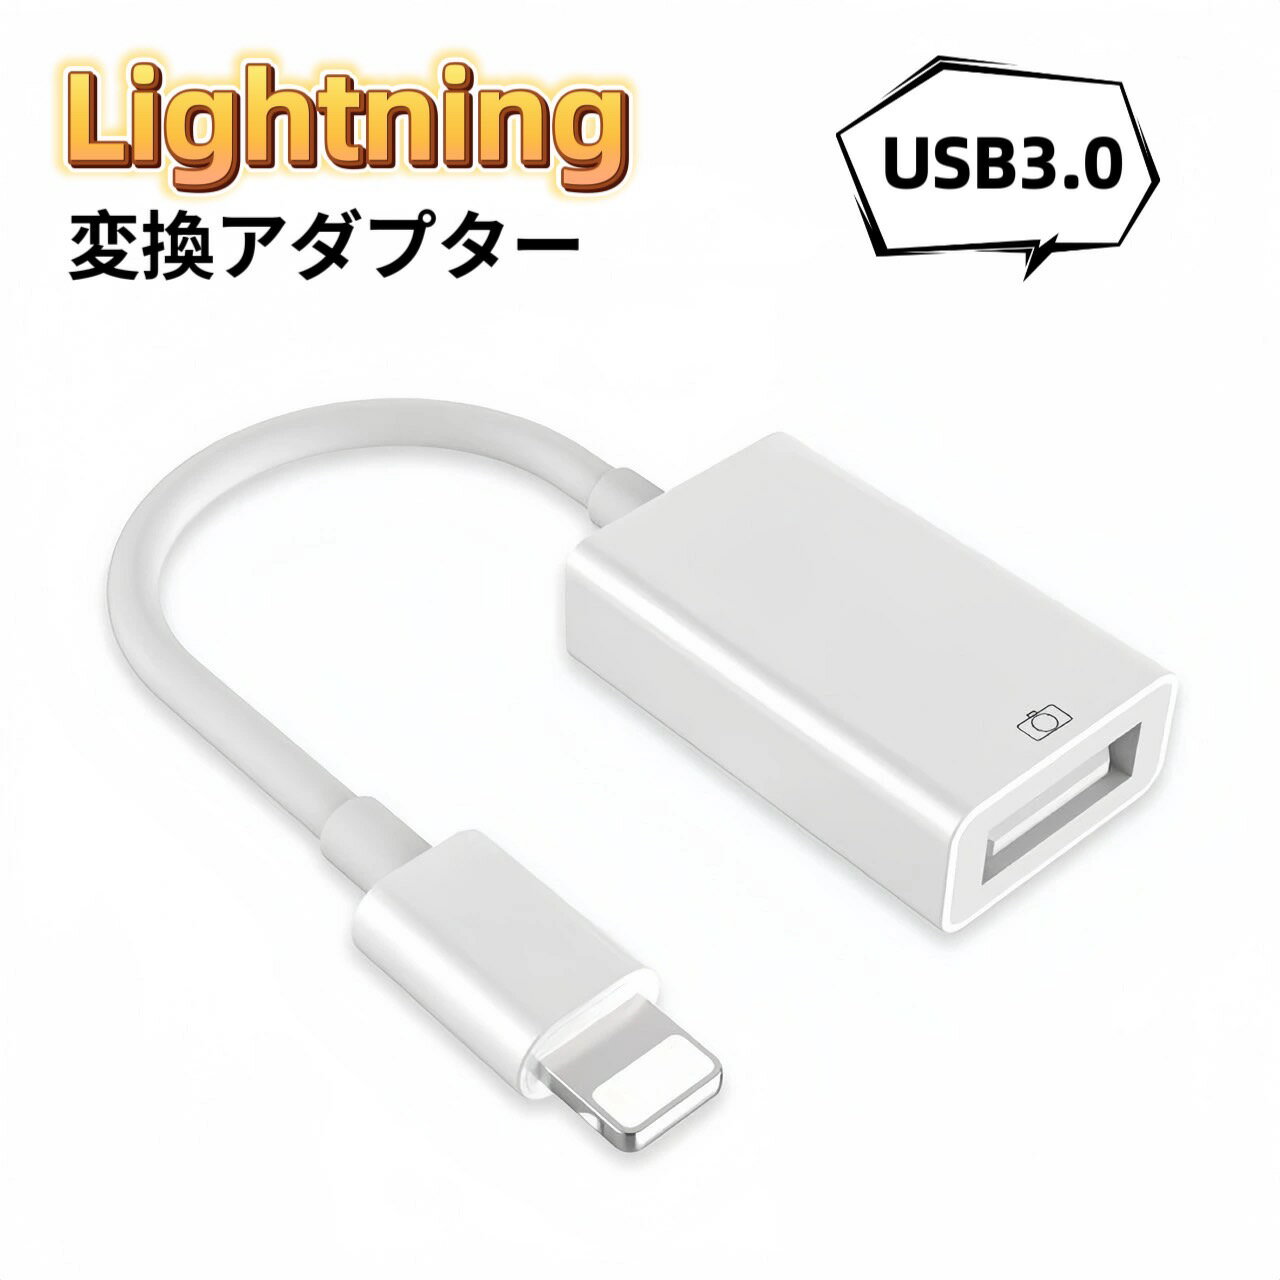 Lightning USB 変換アダプタ OTG USB3.0 iPho